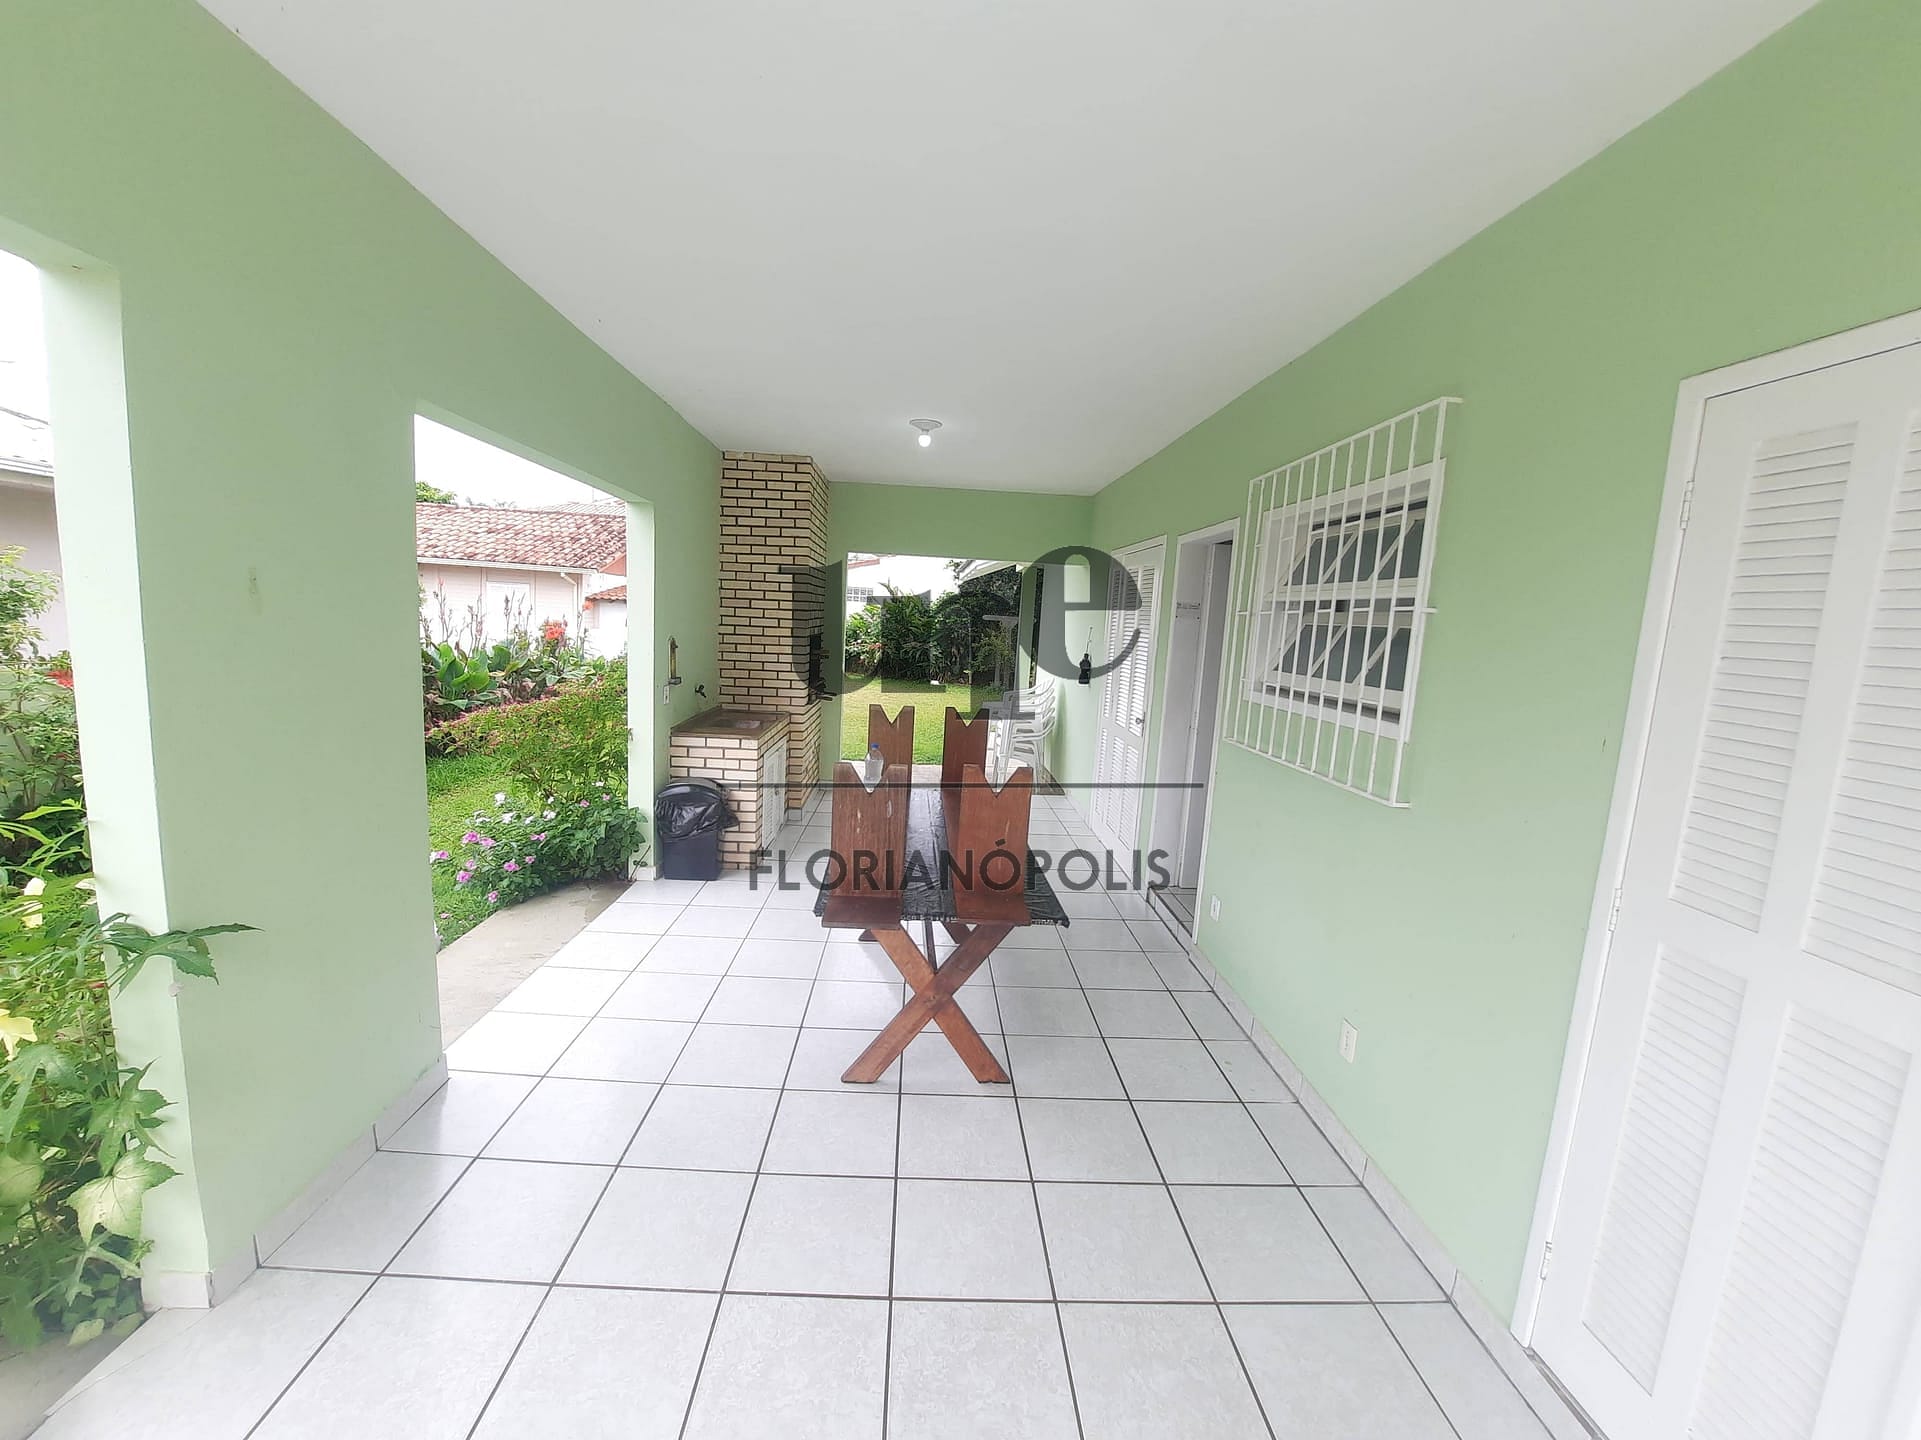 Casa em Daniela, Florianópolis/SC de 200m² 4 quartos à venda por R$ 1.589.000,00